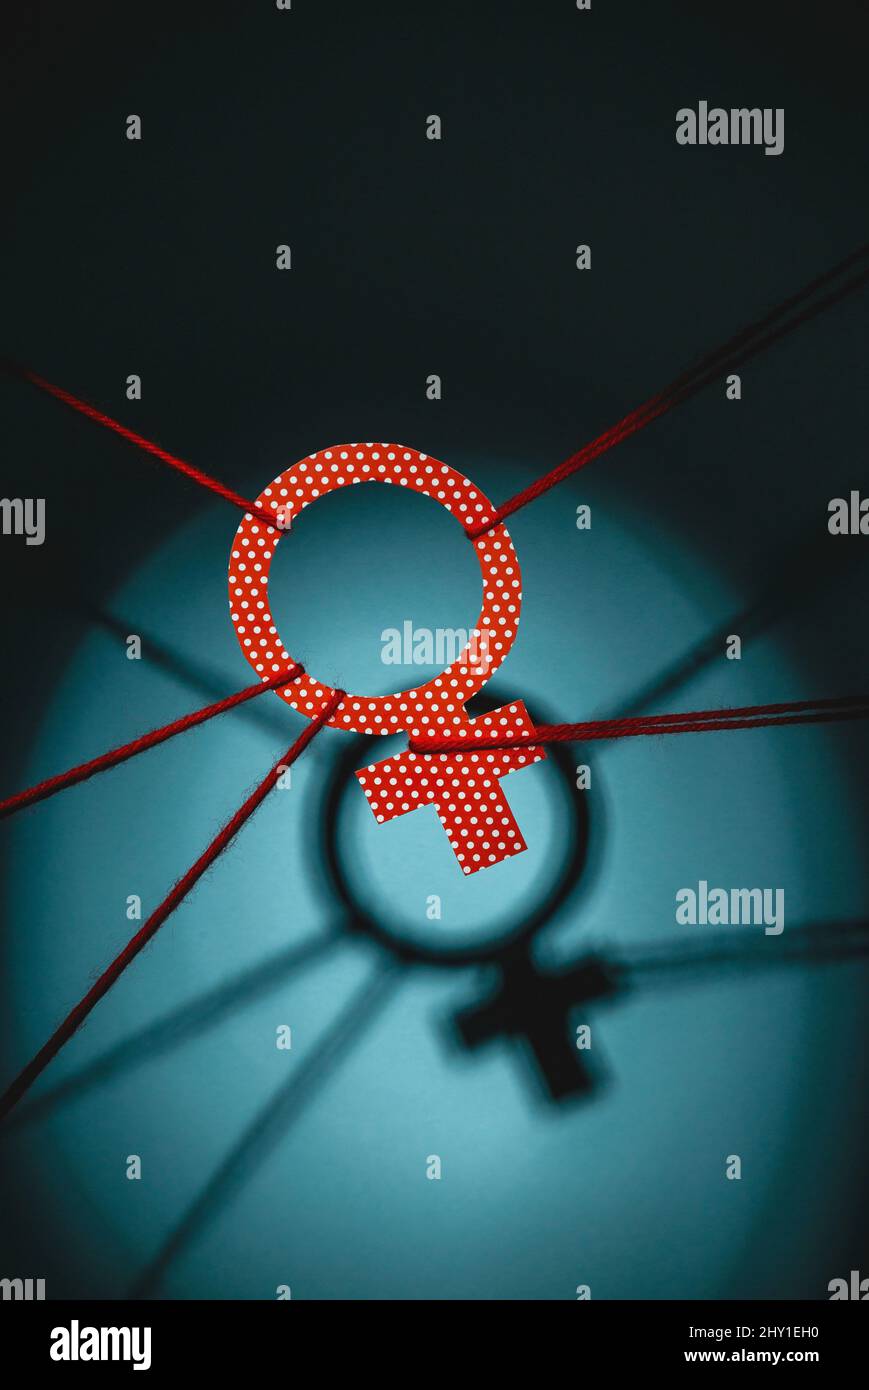 Depuis le dessus de la polka rouge, le symbole de Vénus est attaché avec des cordes représentant l'inégalité des sexes dans la pièce avec l'ombre et l'éclairage tamisé Banque D'Images